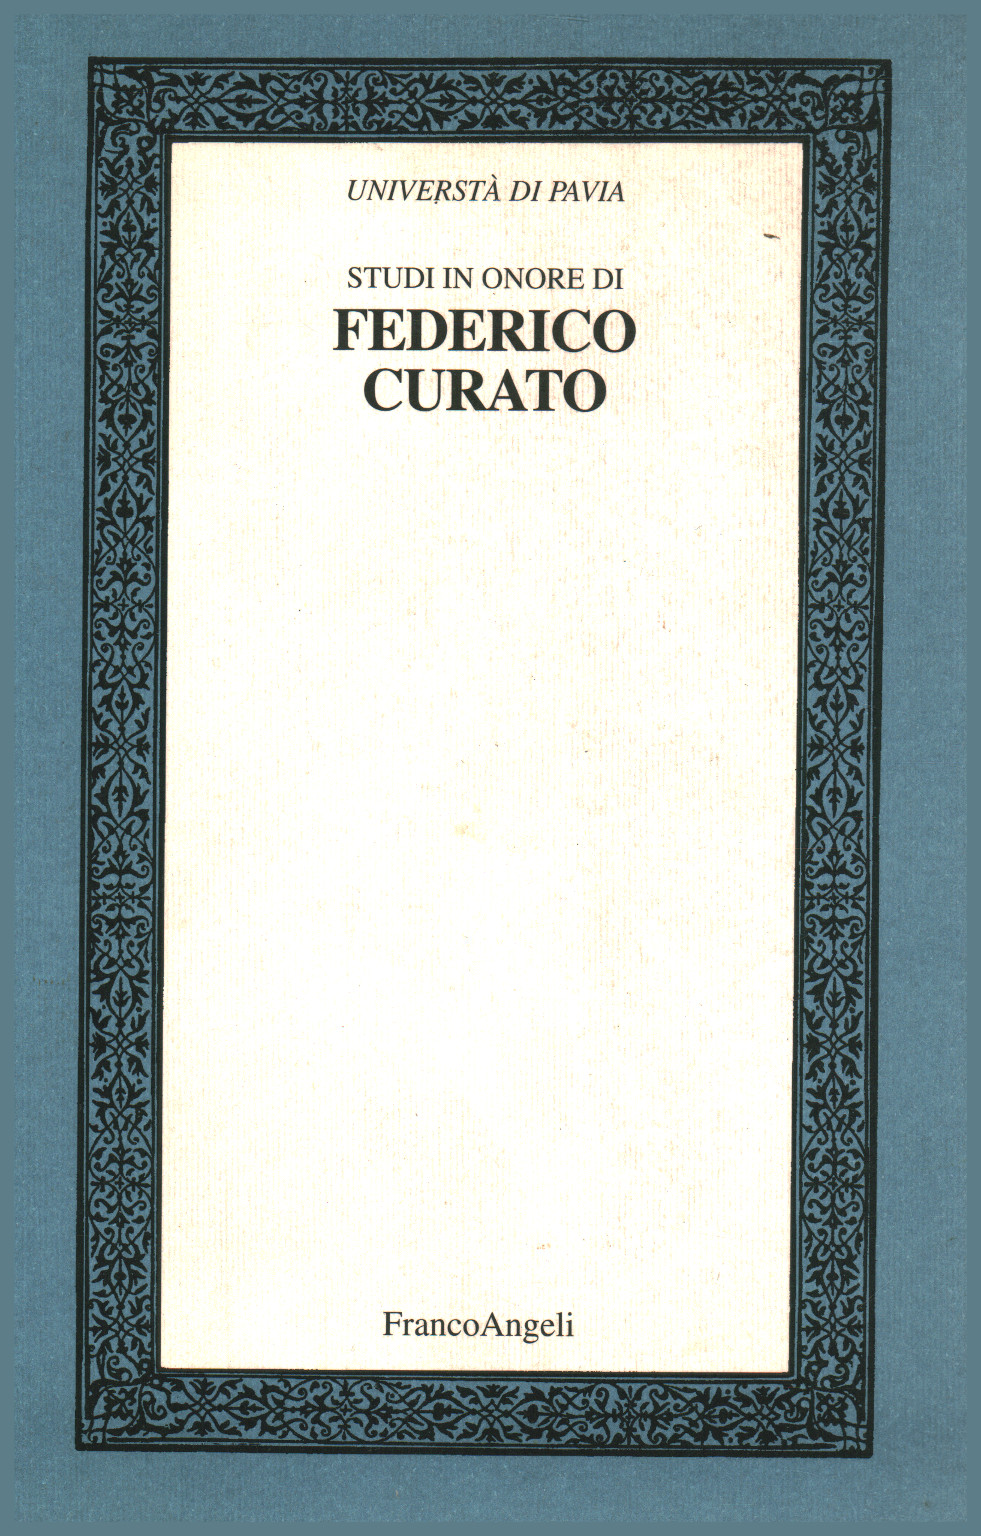 Études en l'honneur de Frédéric Édité Volume II, s.un.